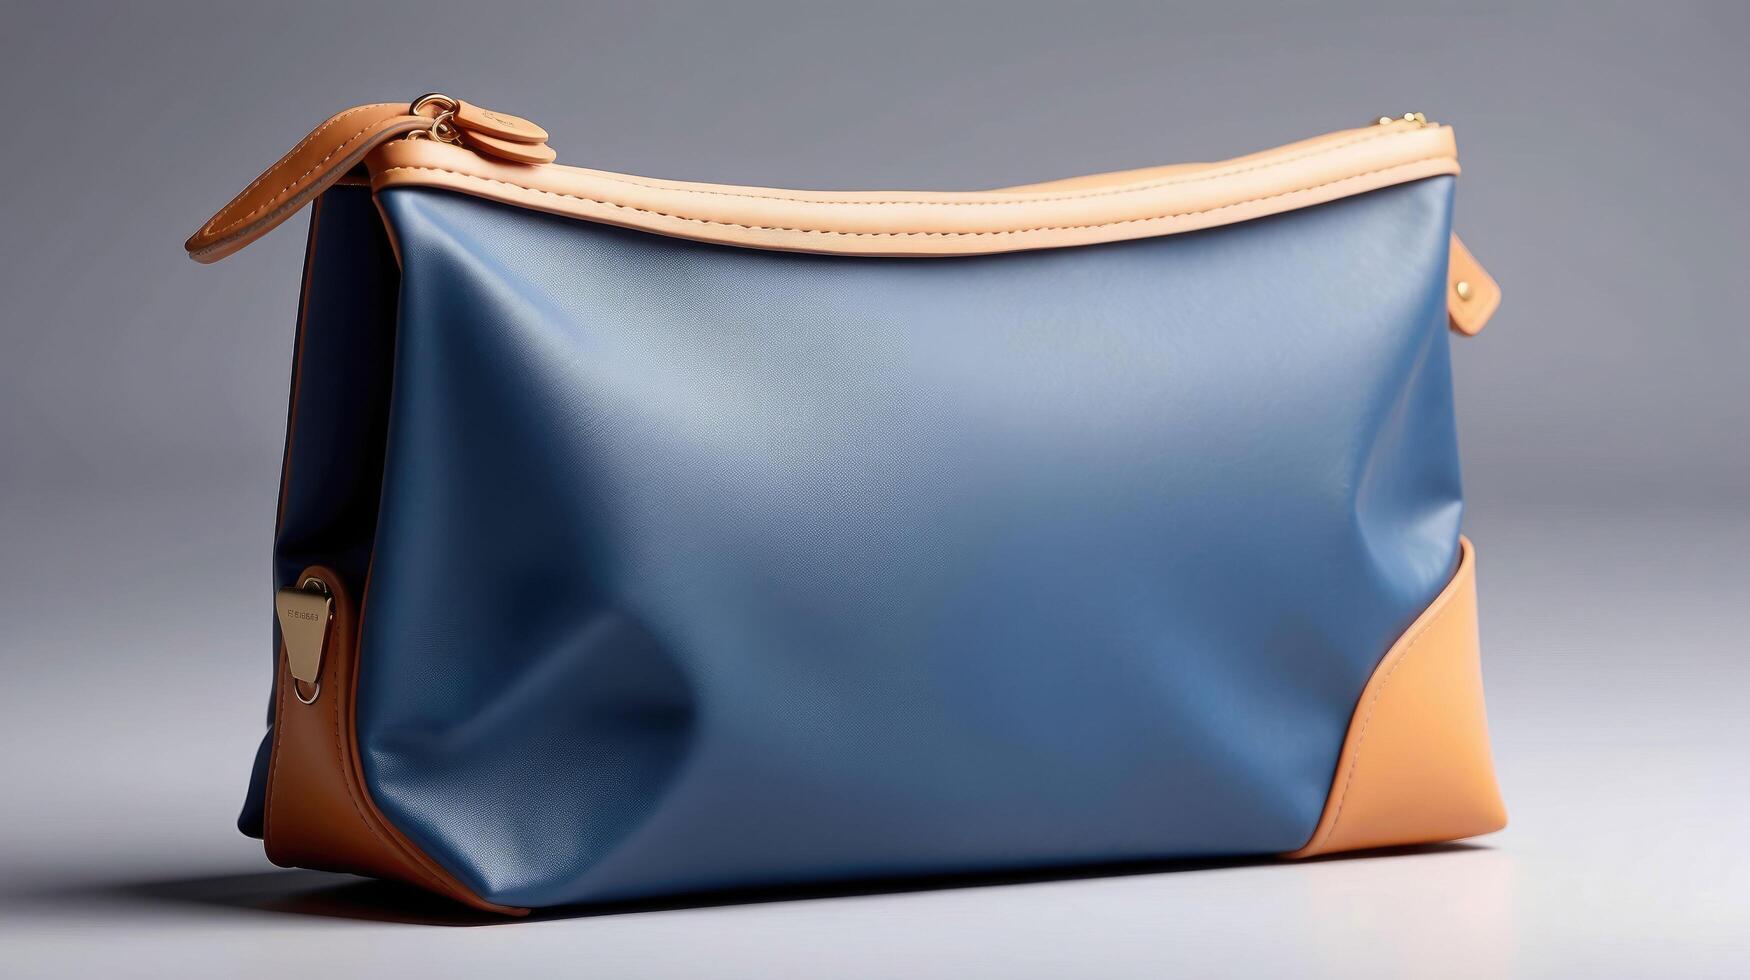 Marine Blau und bräunen Leder Toilettenartikel Reise Tasche mit elegant minimalistisch Design auf ein grau Hintergrund foto